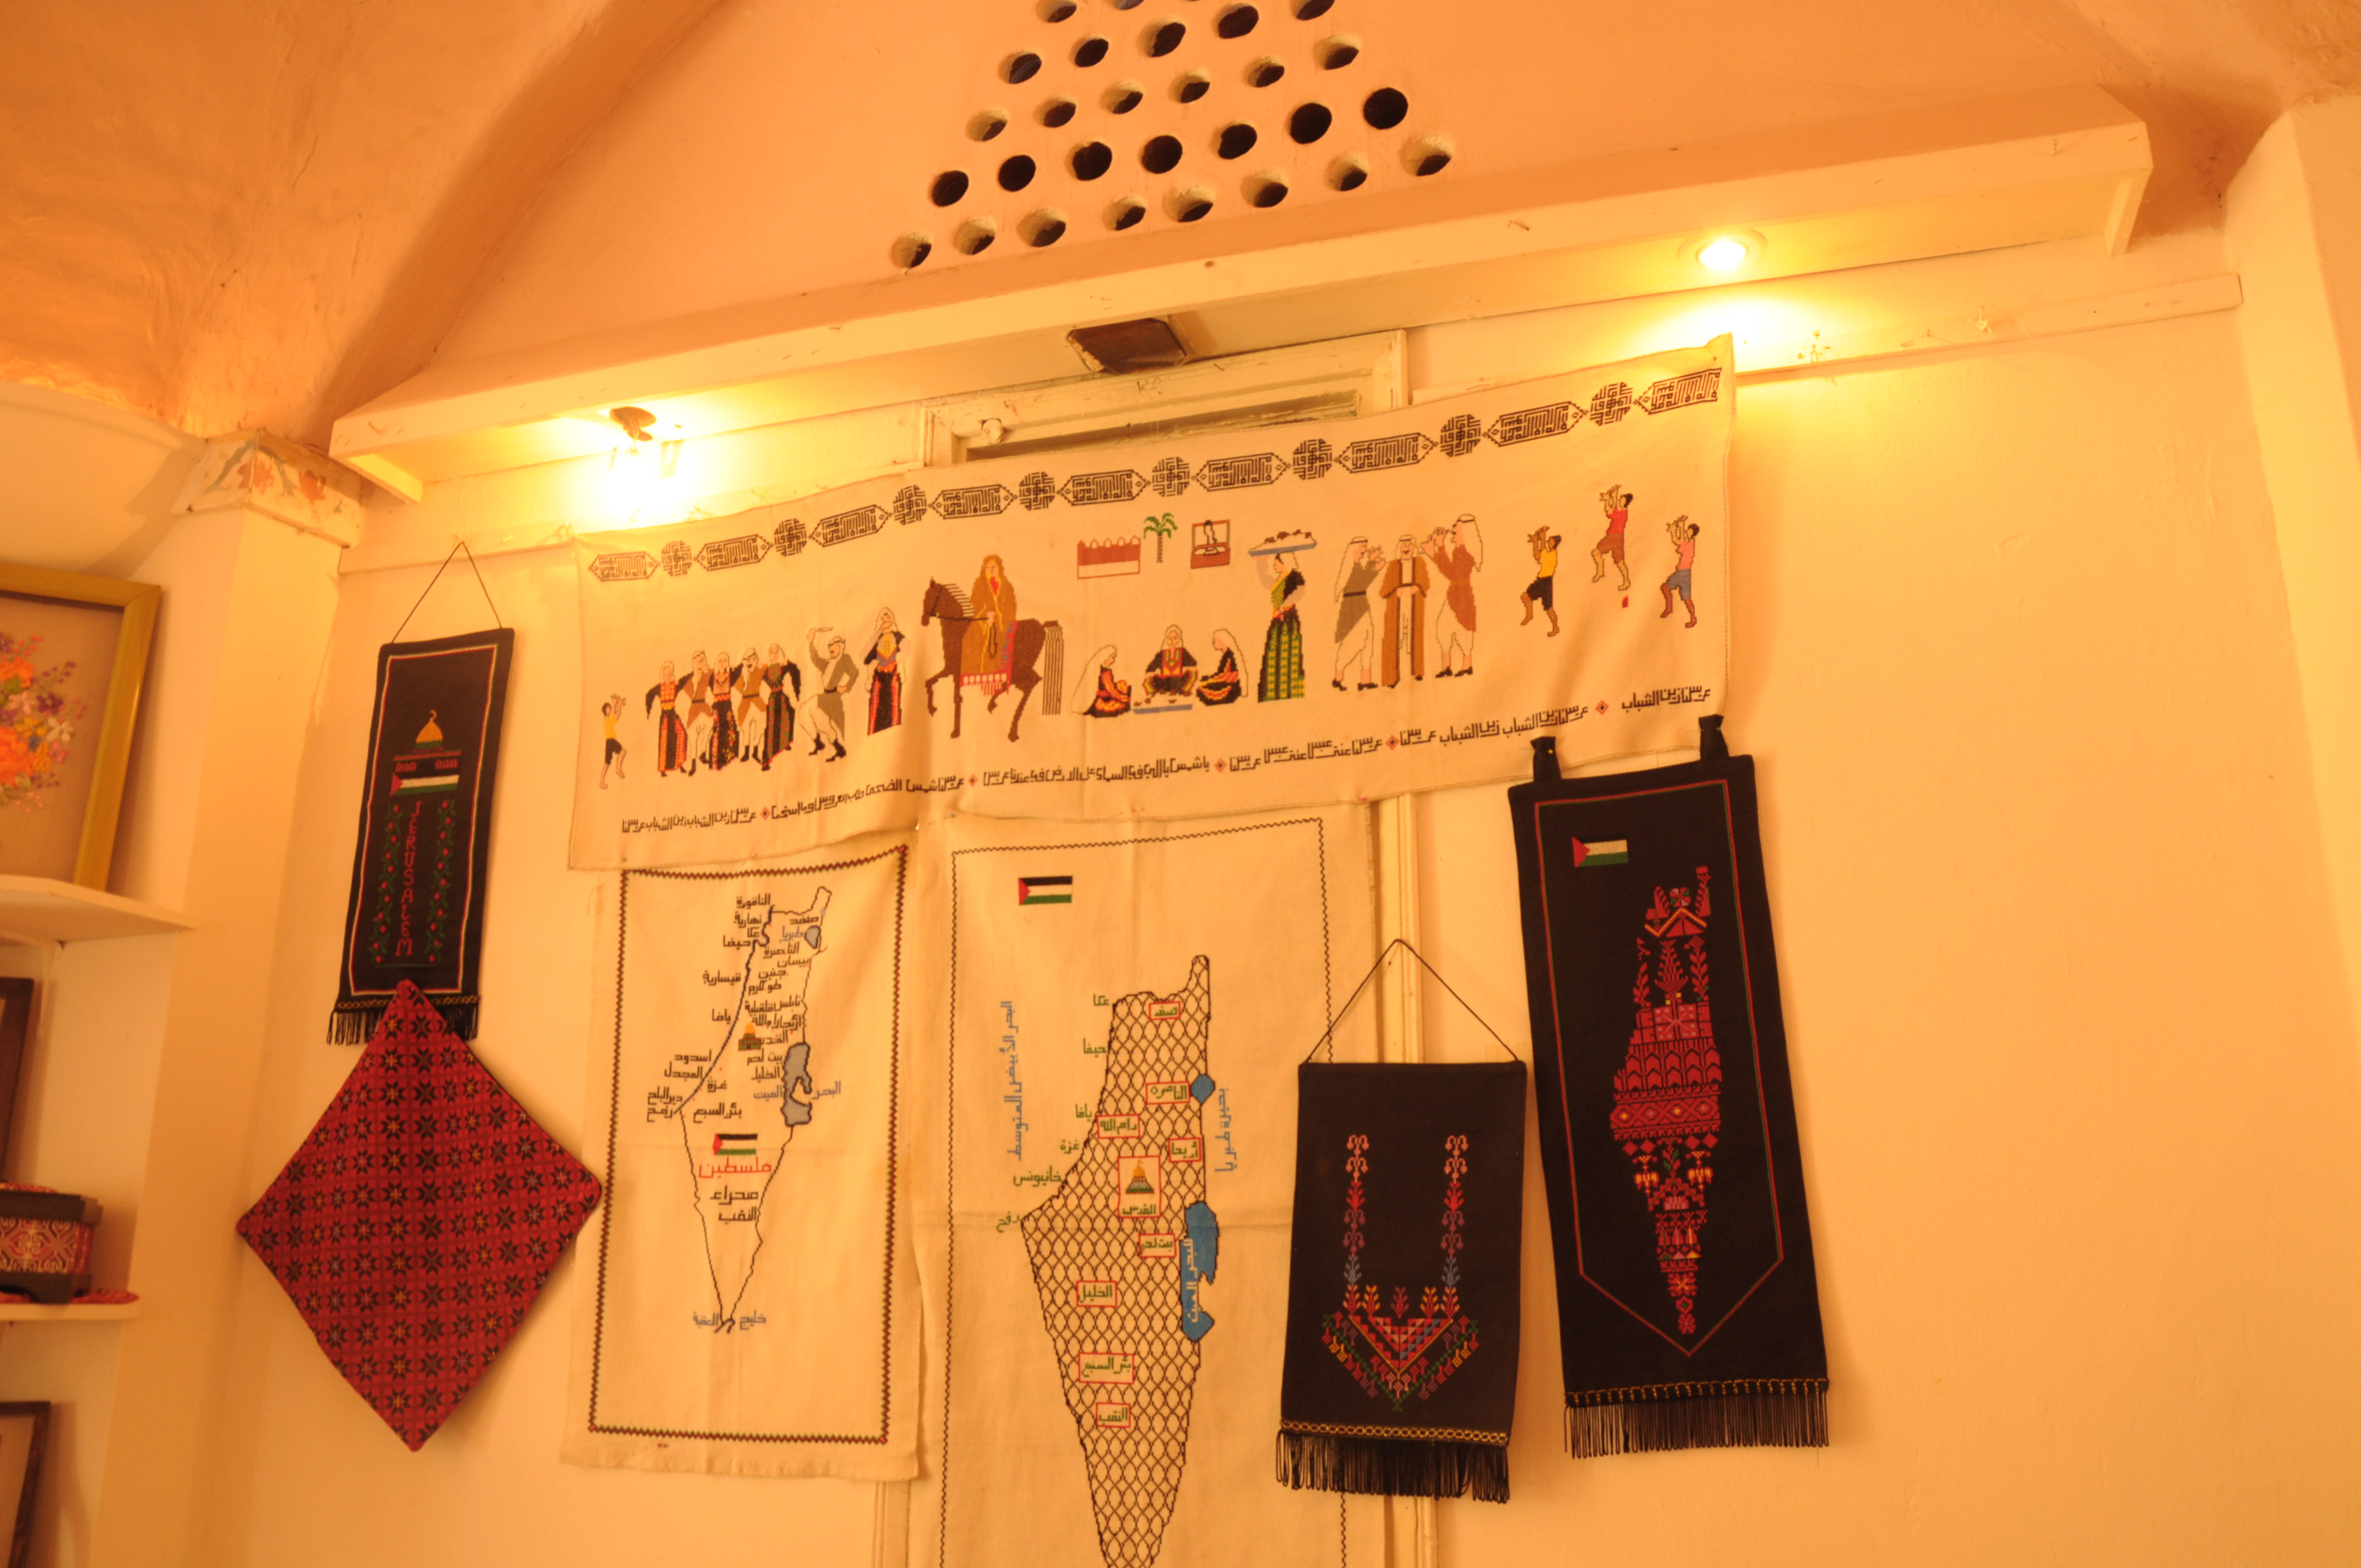 جانب من الاعمال اليدوية التي ورثها الفلسطينييون من اجدادهم وعرضها خلال معرض المنتجات التراثية والأشغال اليدوية بمدينة غزة